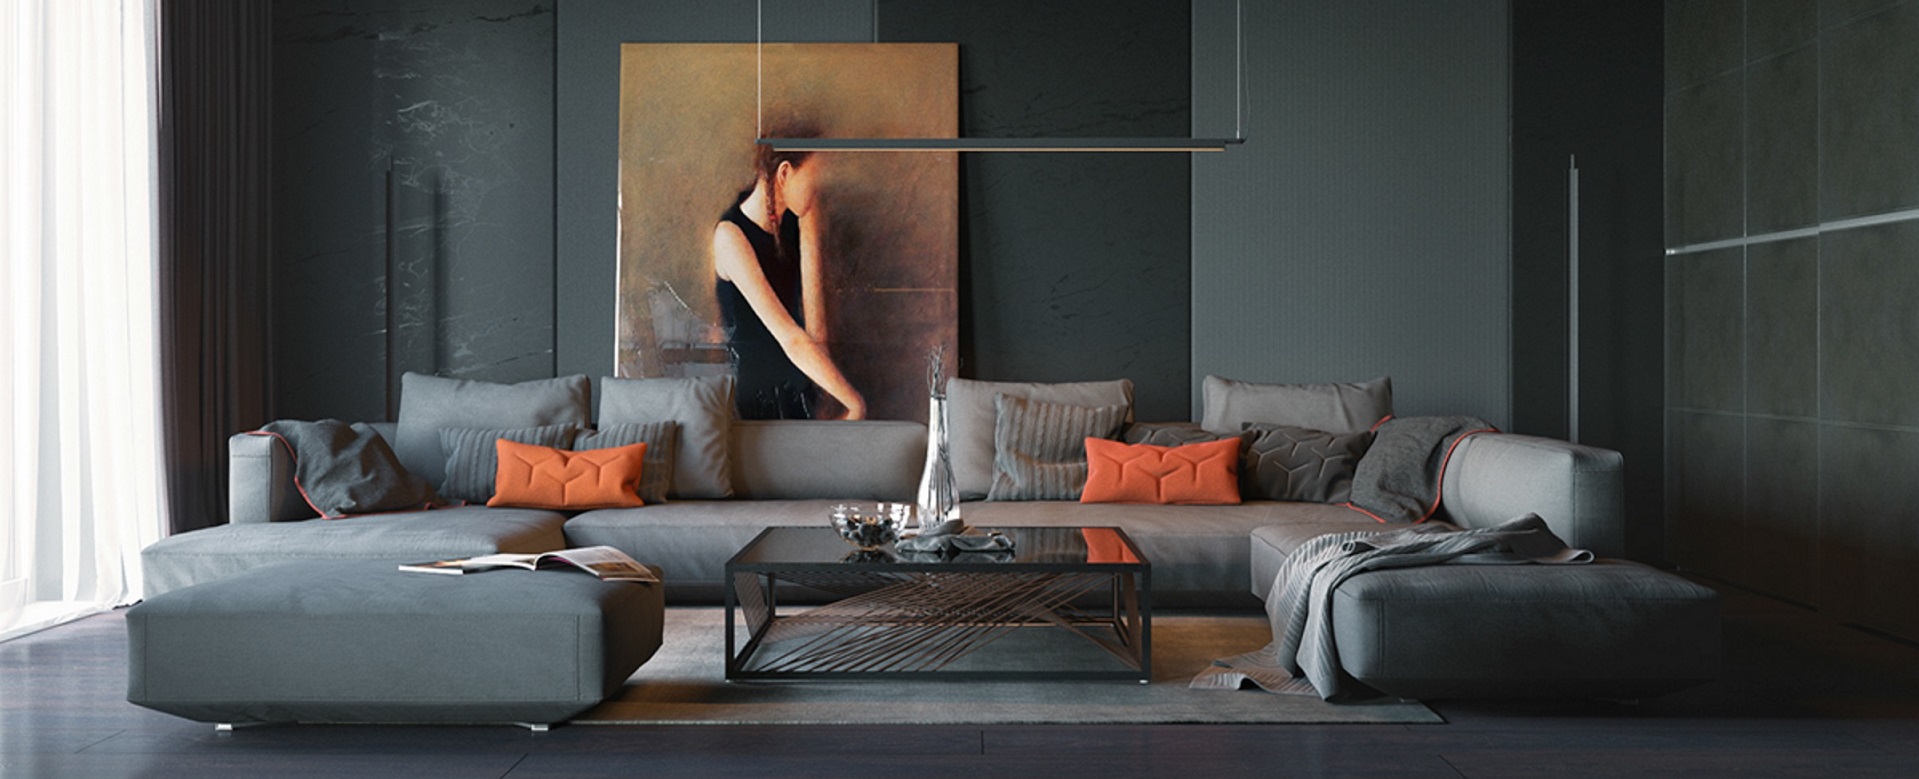 orange-and-black-interior-artwork-ideas